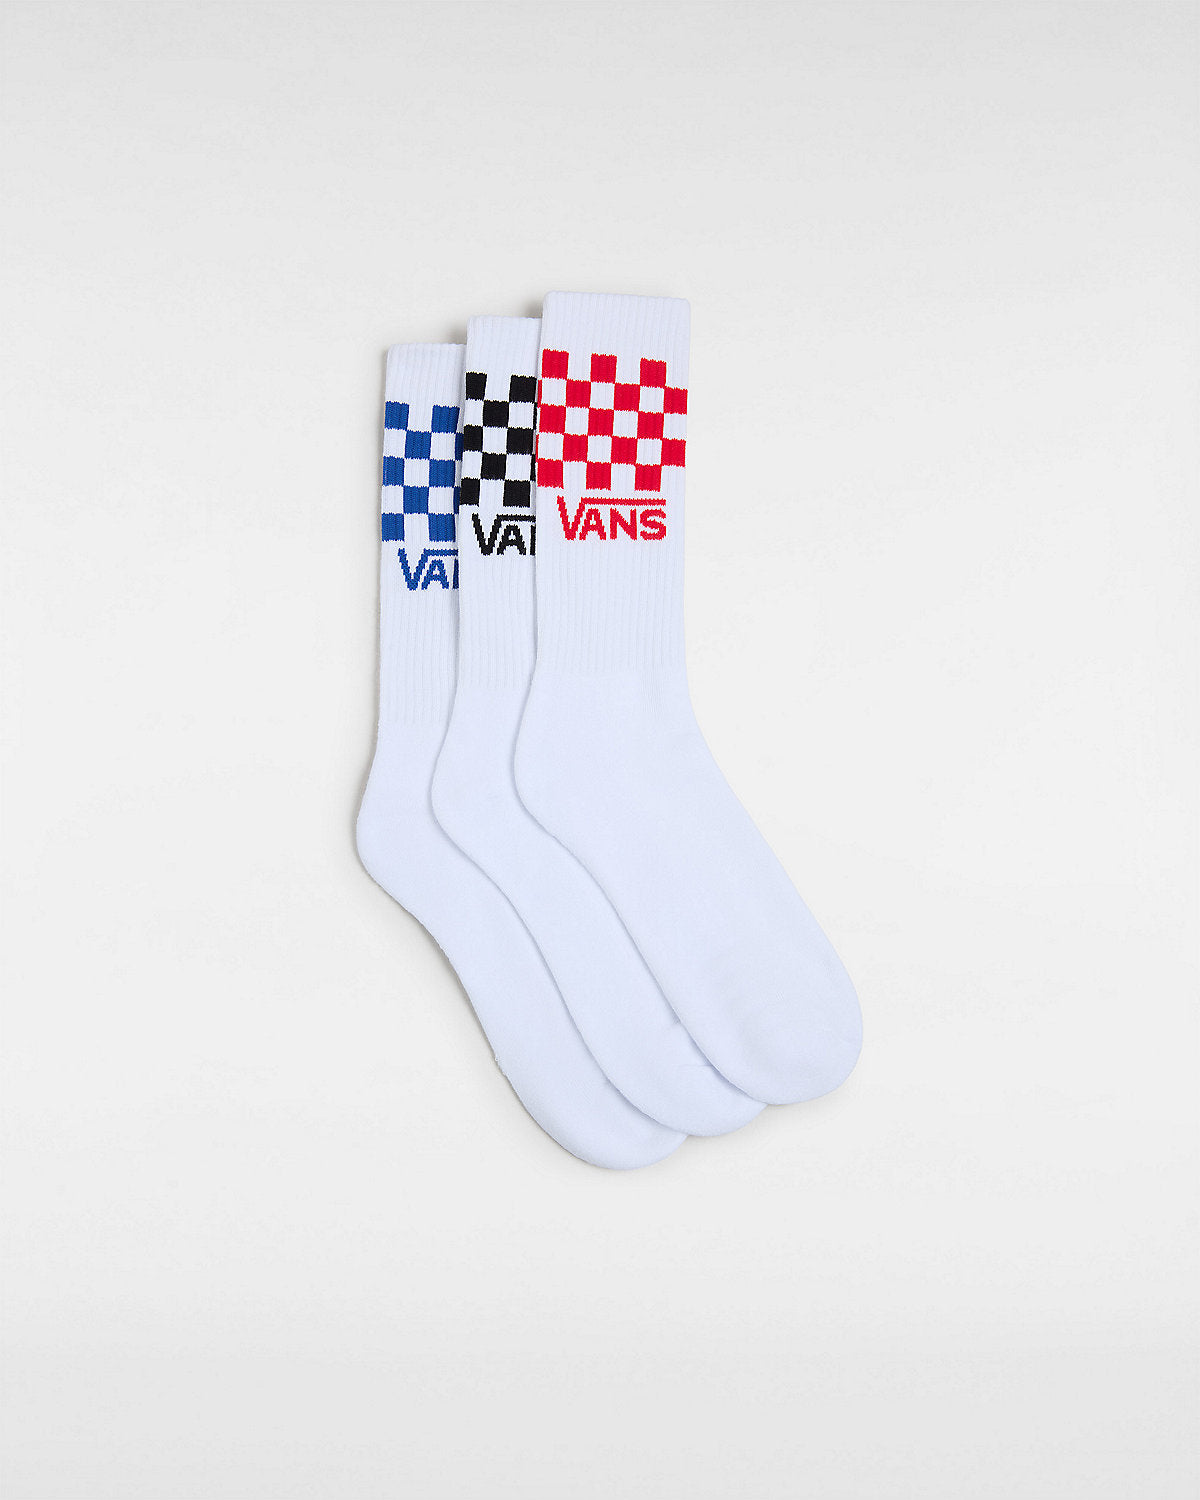 VANS Mens Classic Check Crew Socks (3 Pairs) - White